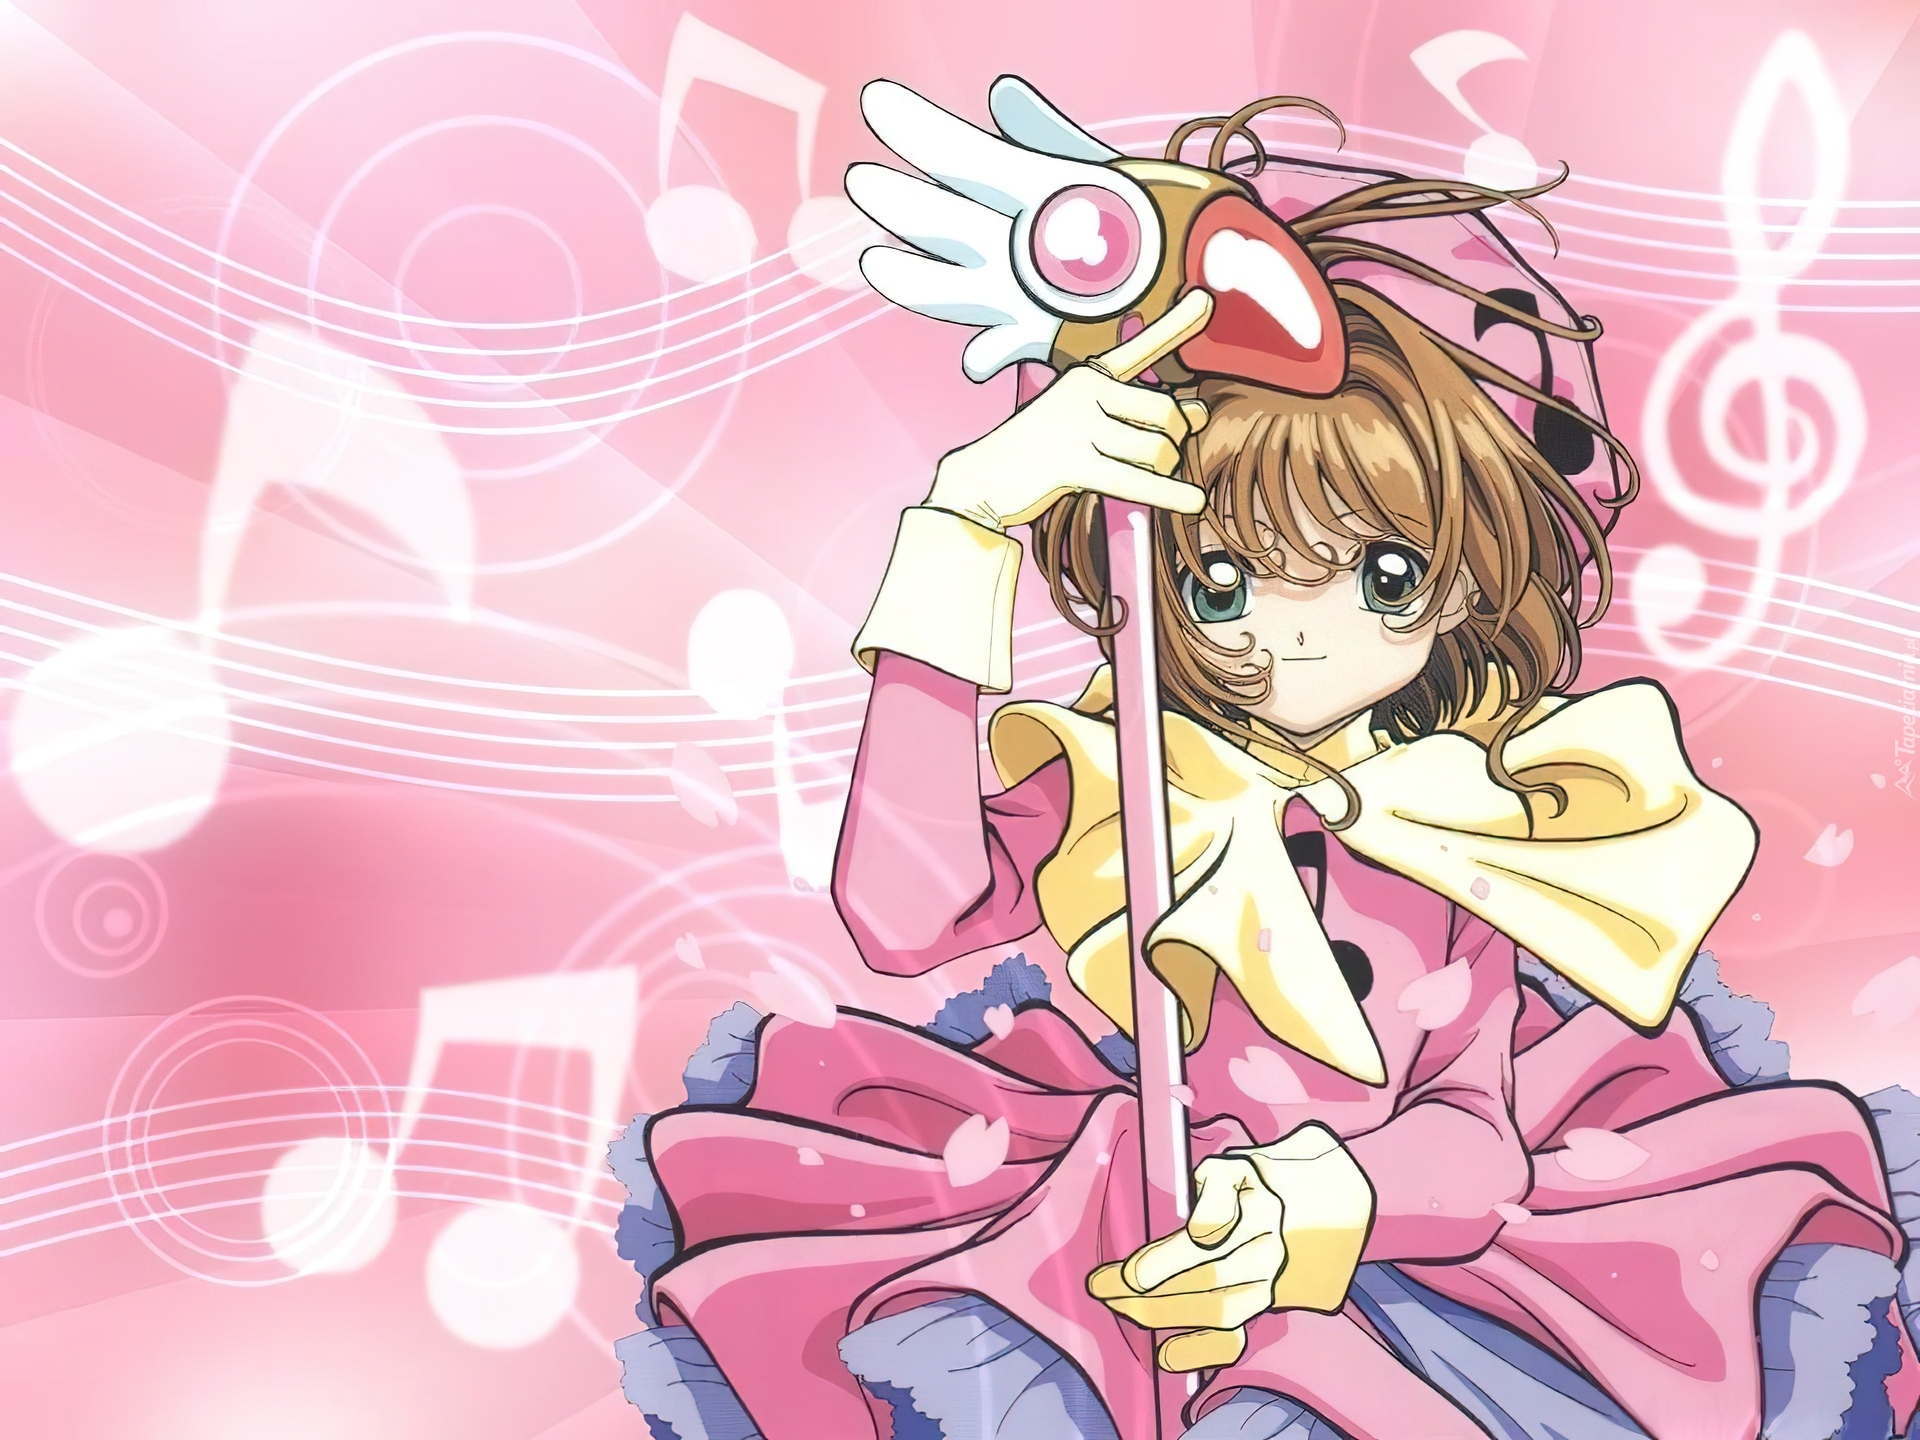 Cardcaptor Sakura, dziewczyna, kij, totem, nuty, sukienka